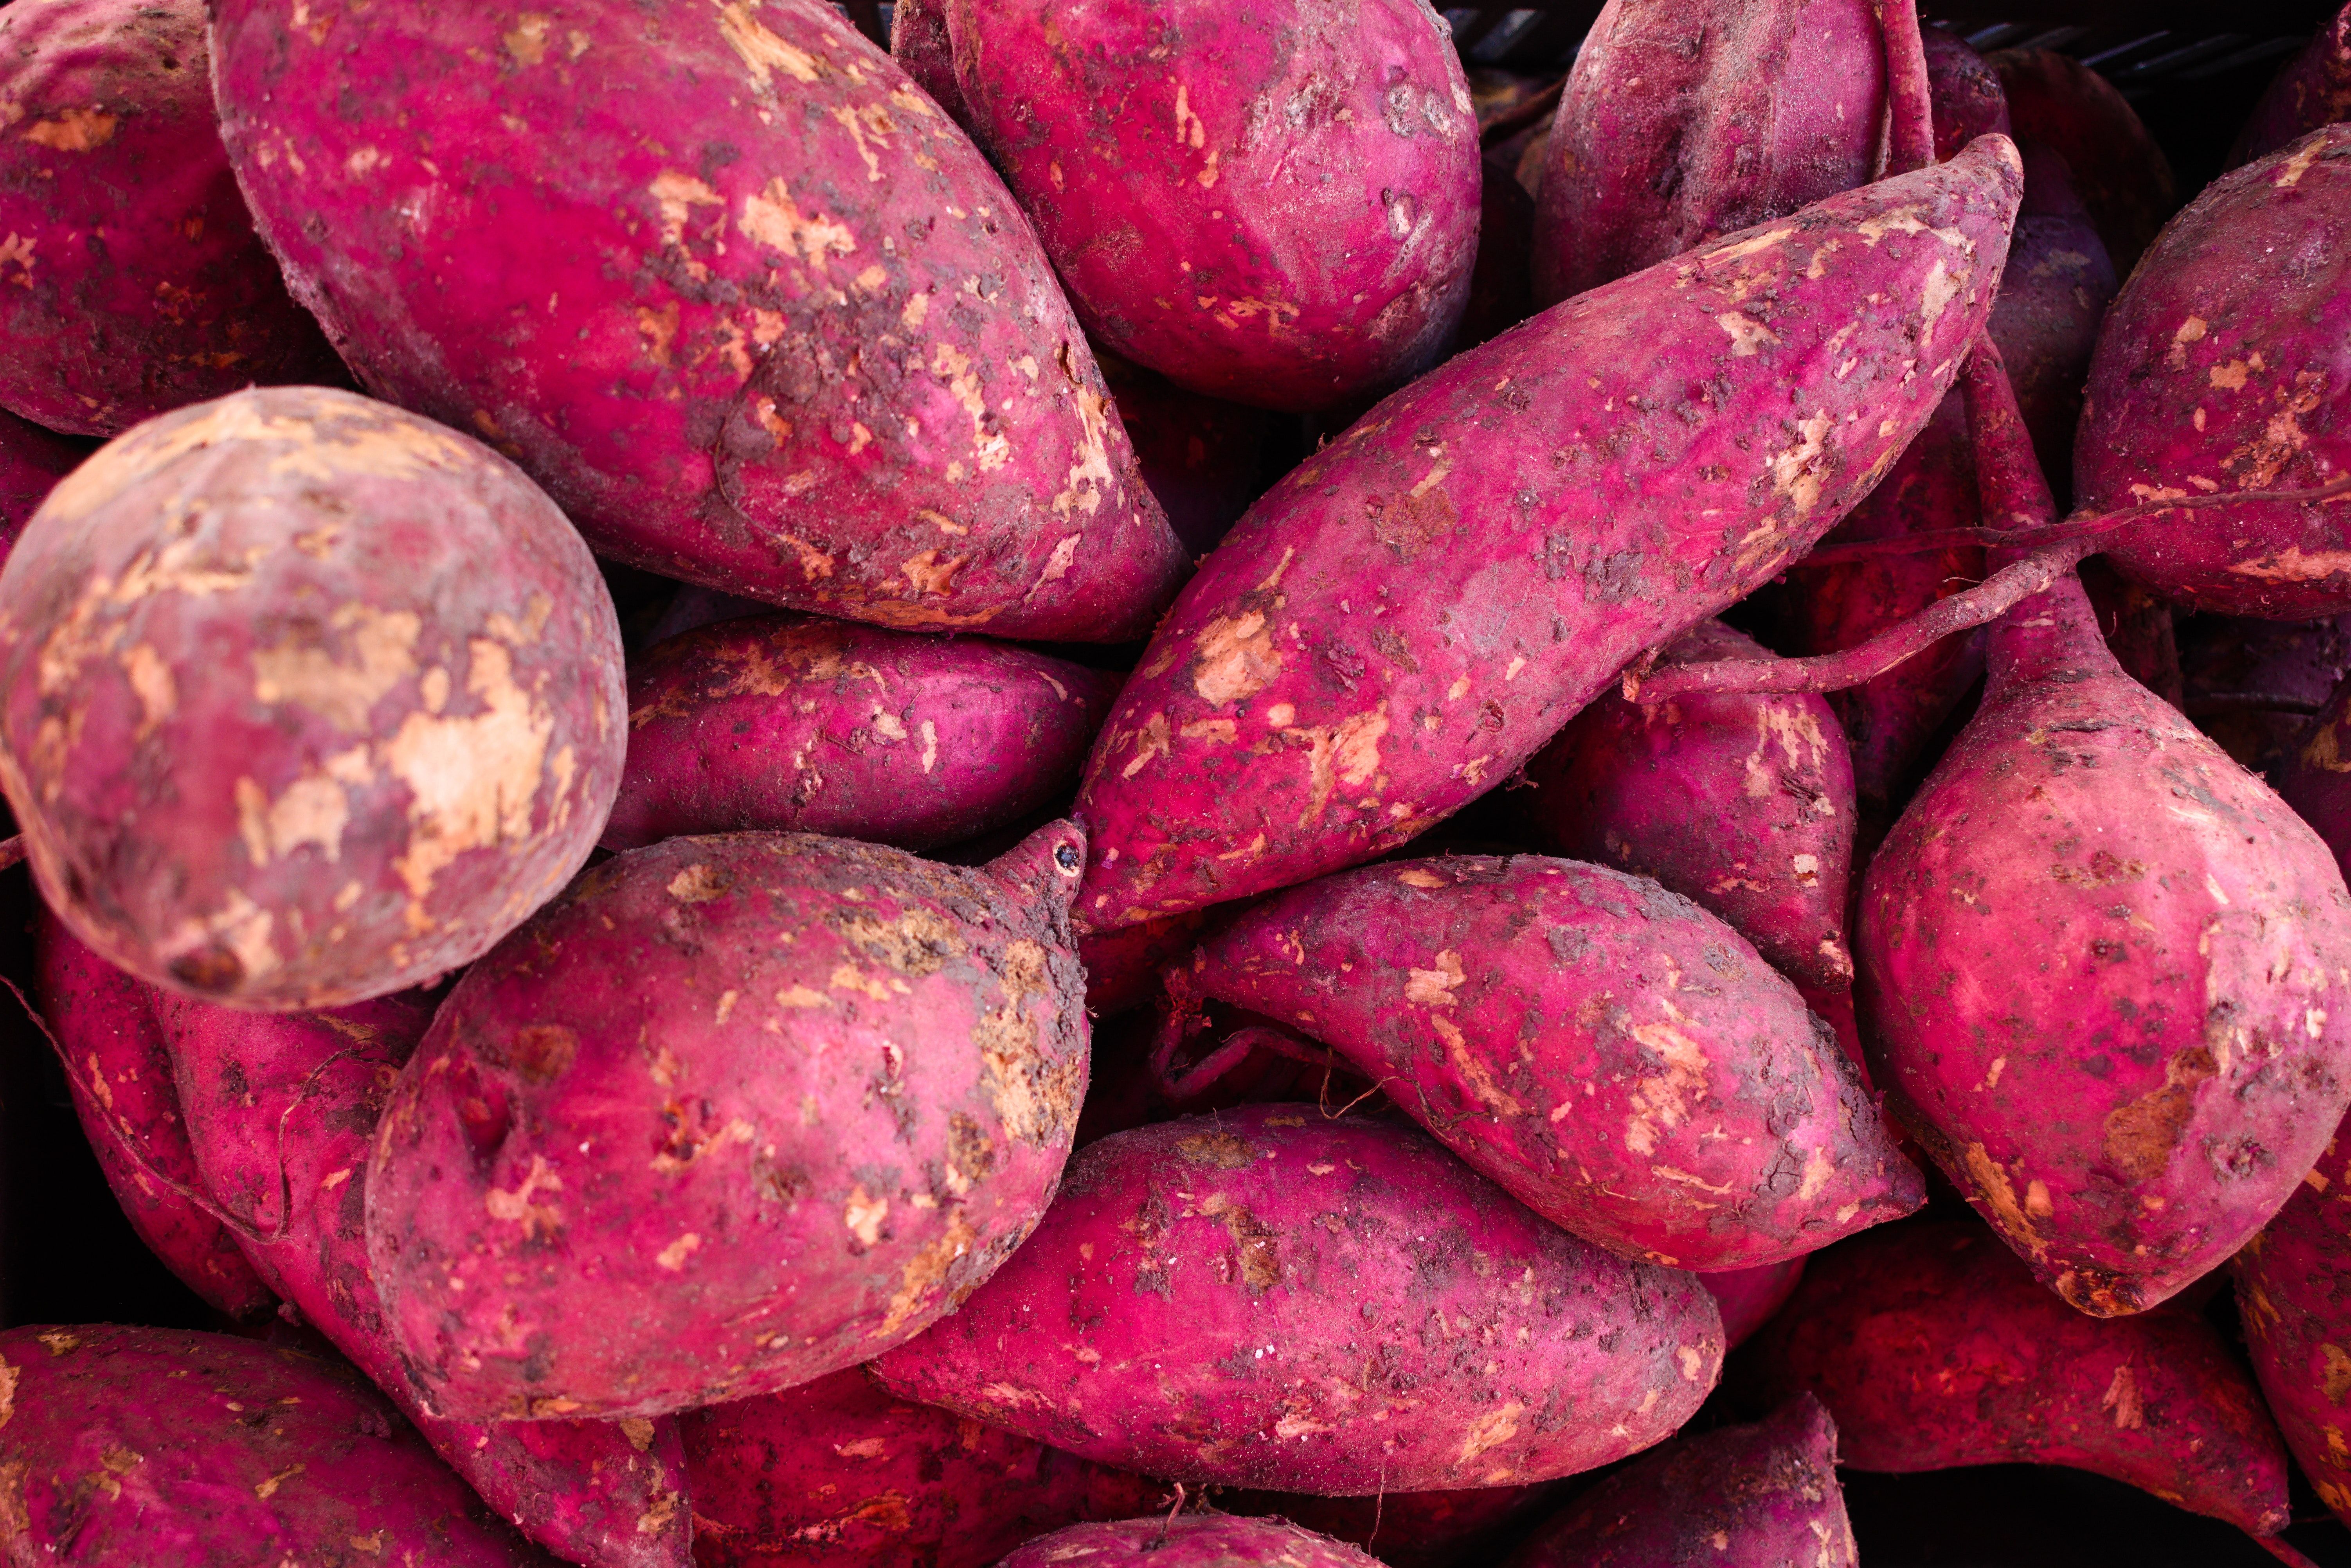 Side effects of sweet potatoes